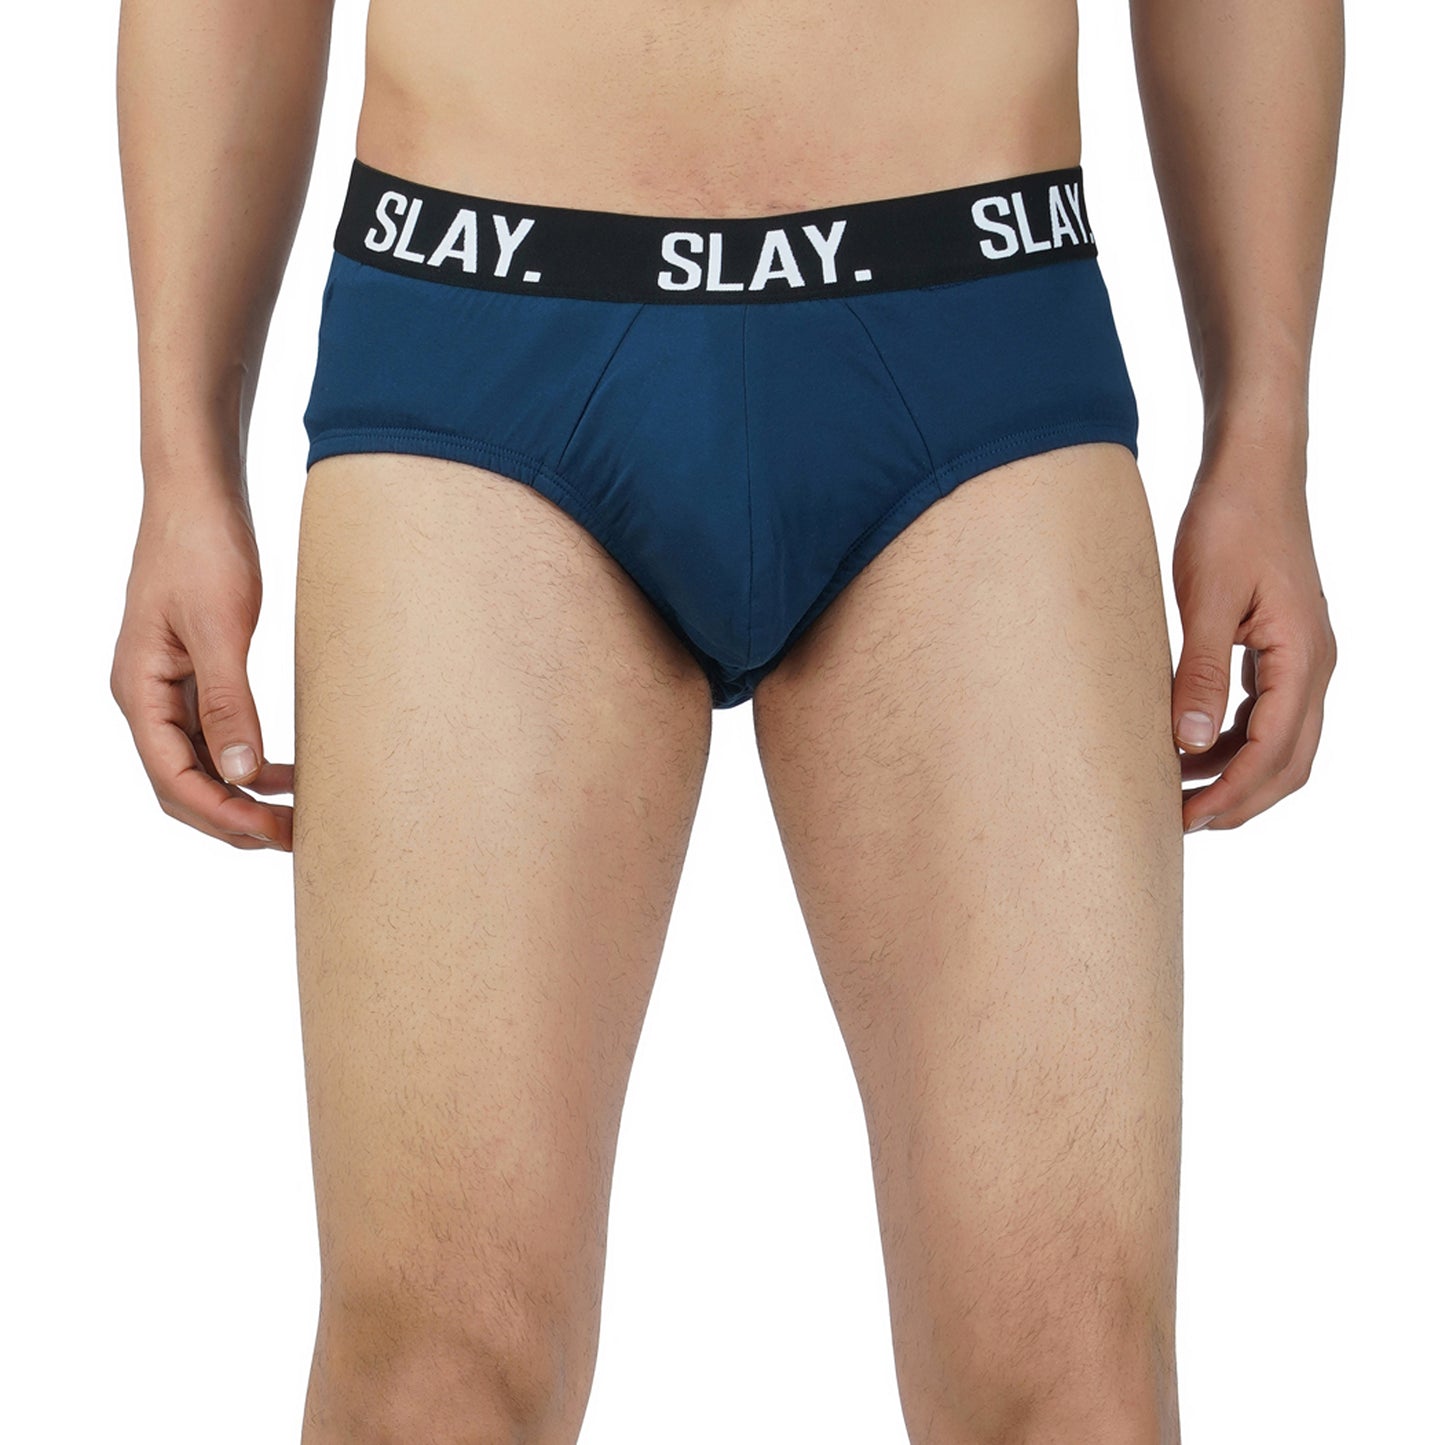 SLAY. Men's Blue Underwear Cotton Briefs